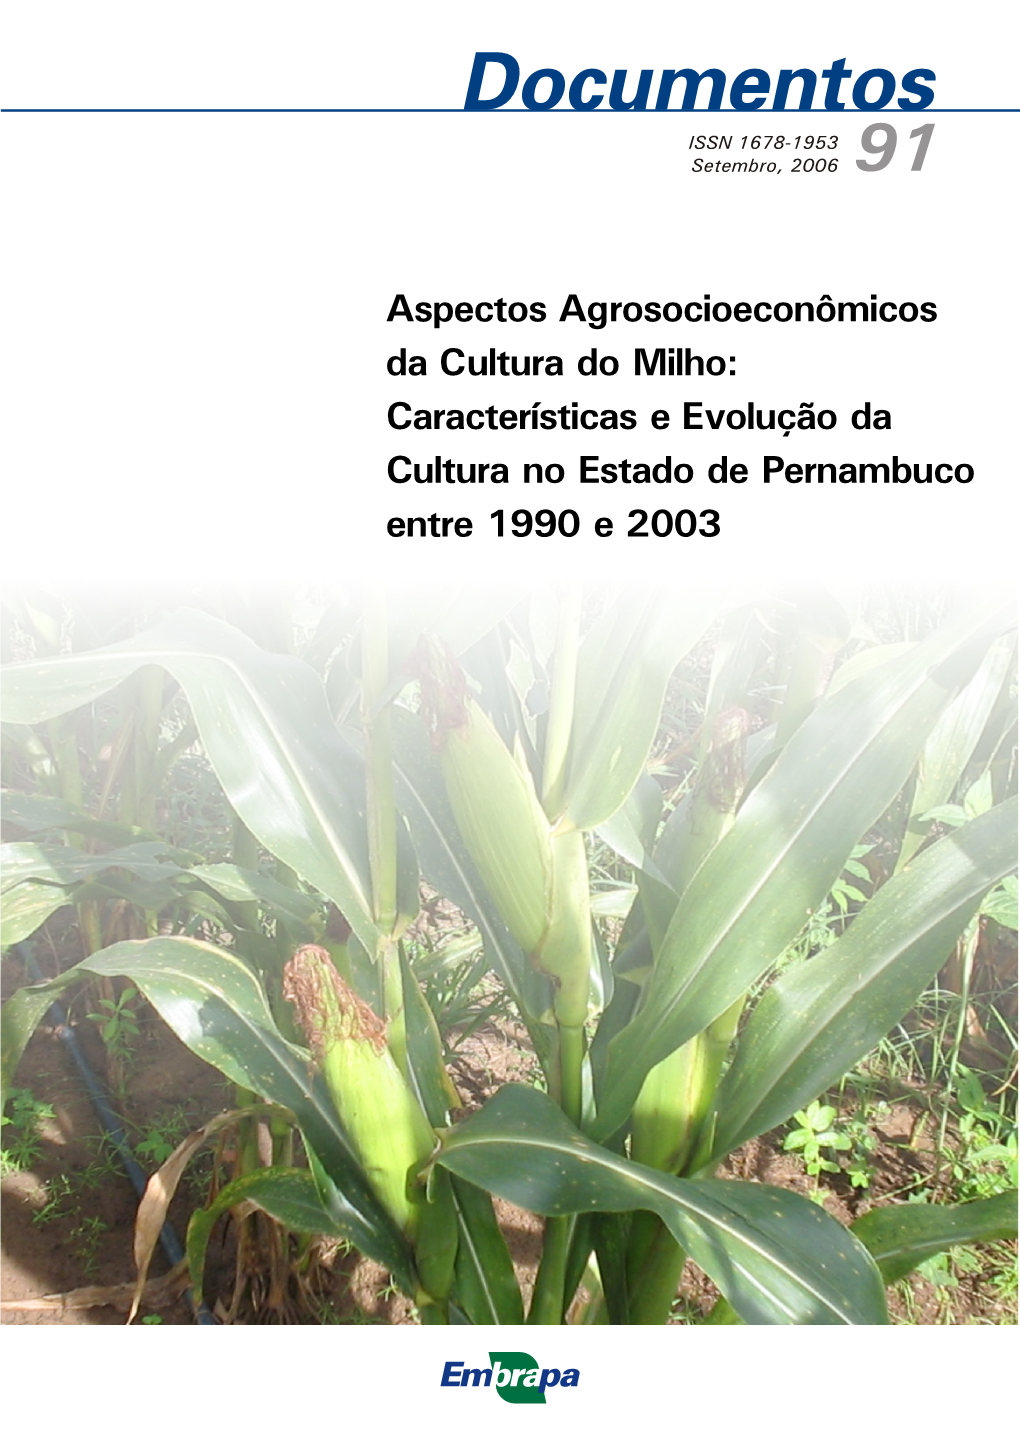 Aspectos Agrosocioeconômicos Da Cultura Do Milho: Características E Evolução Da Cultura No Estado De Pernambuco Entre 1990 E 2003 ISSN 1678-1953 Setembro, 2006